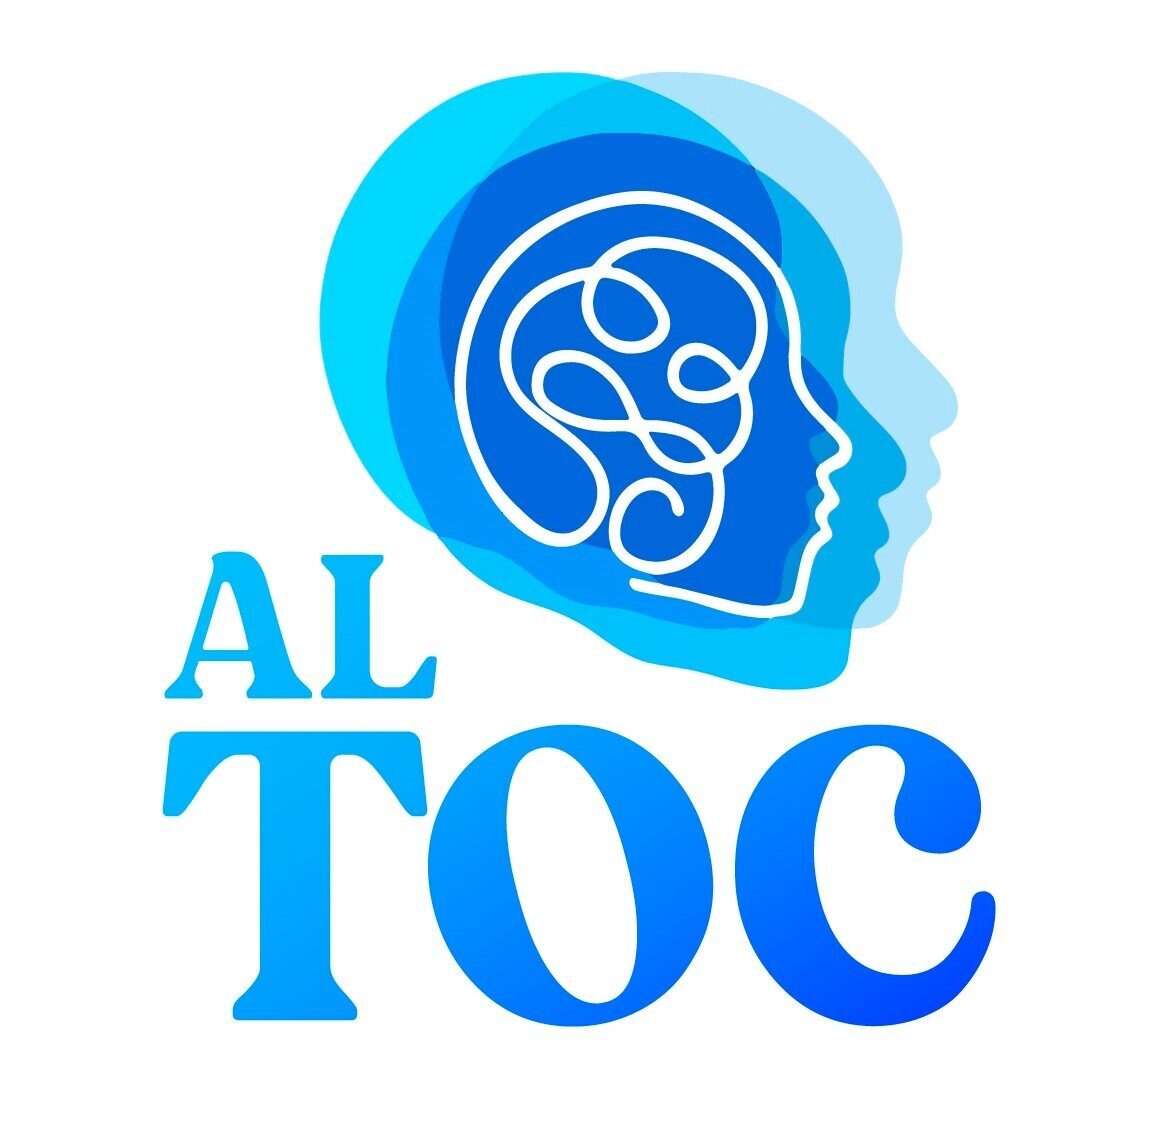 altoc.org